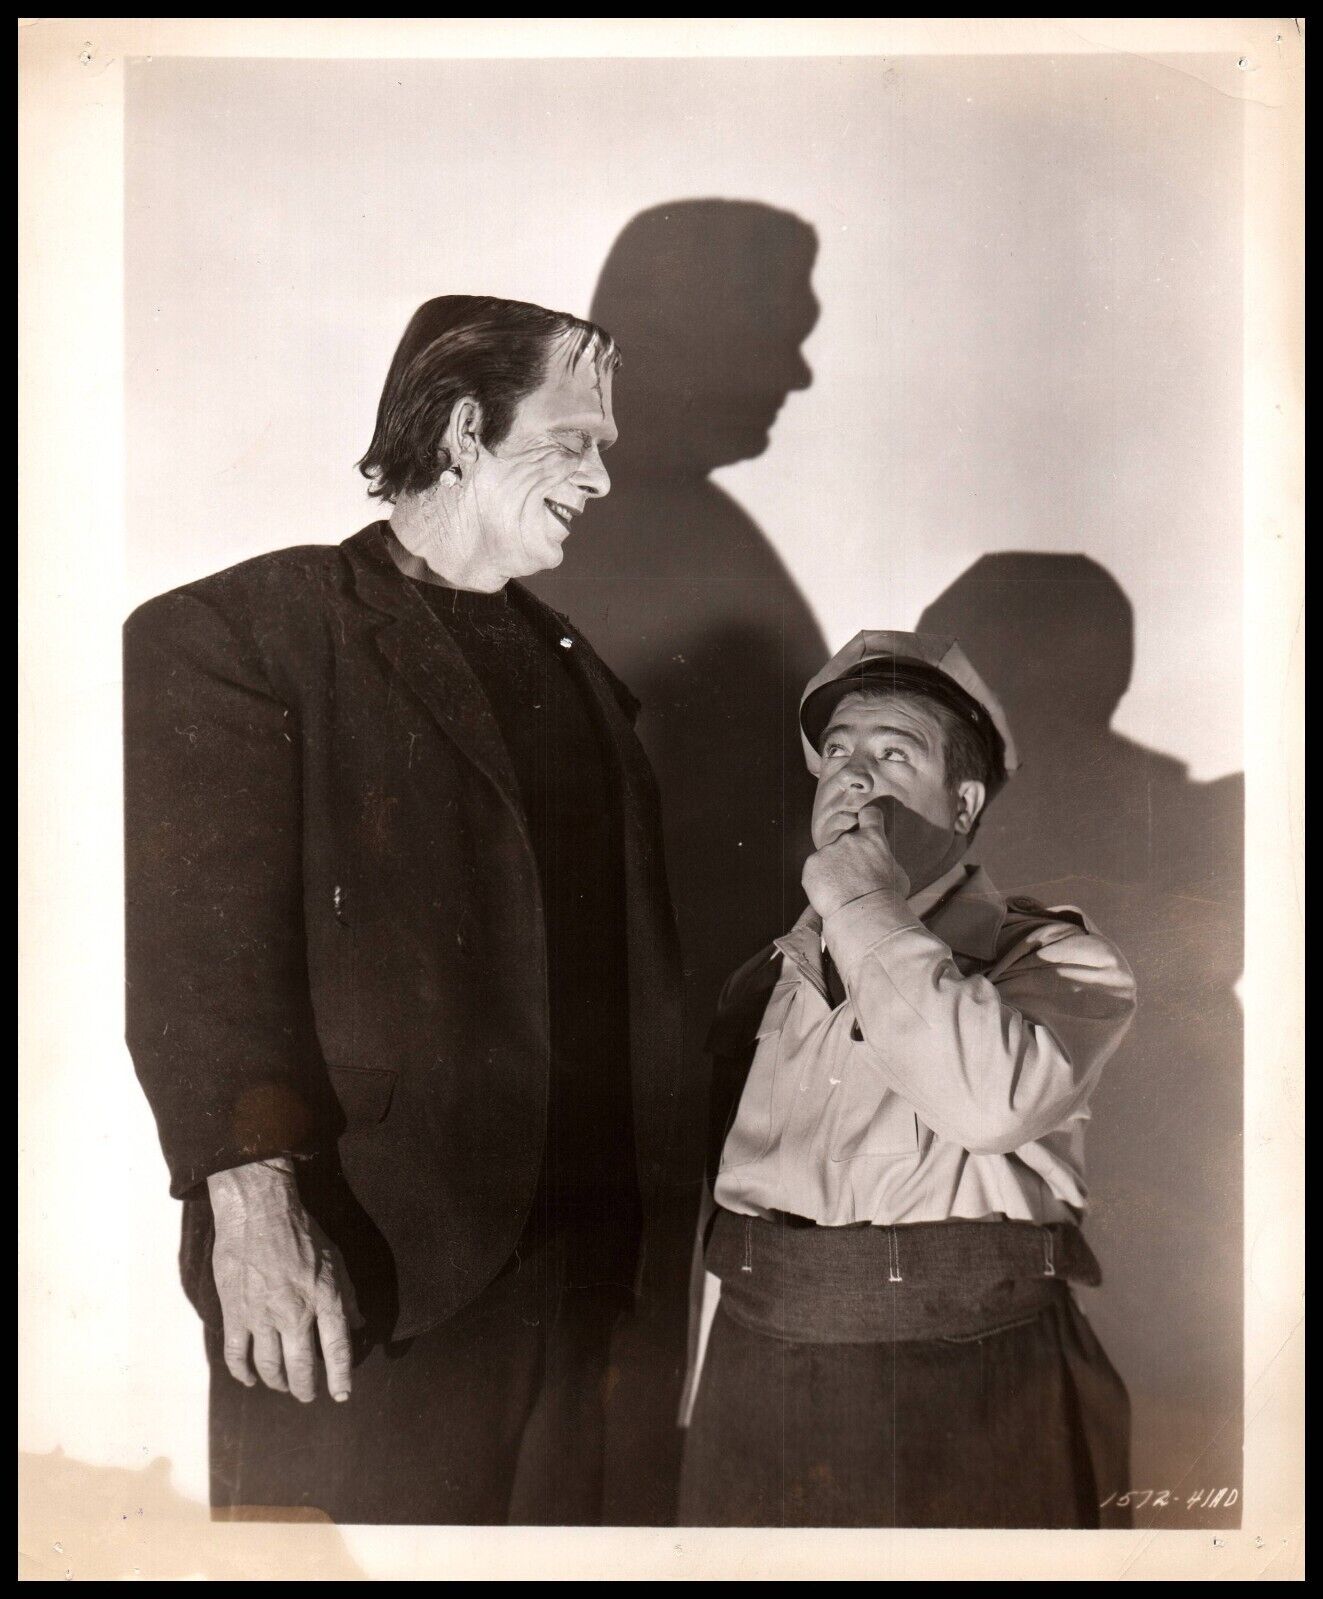 Lou Costello + Glenn Strange Abbott & Costello Meet Frankenstein 1948 Photo 734